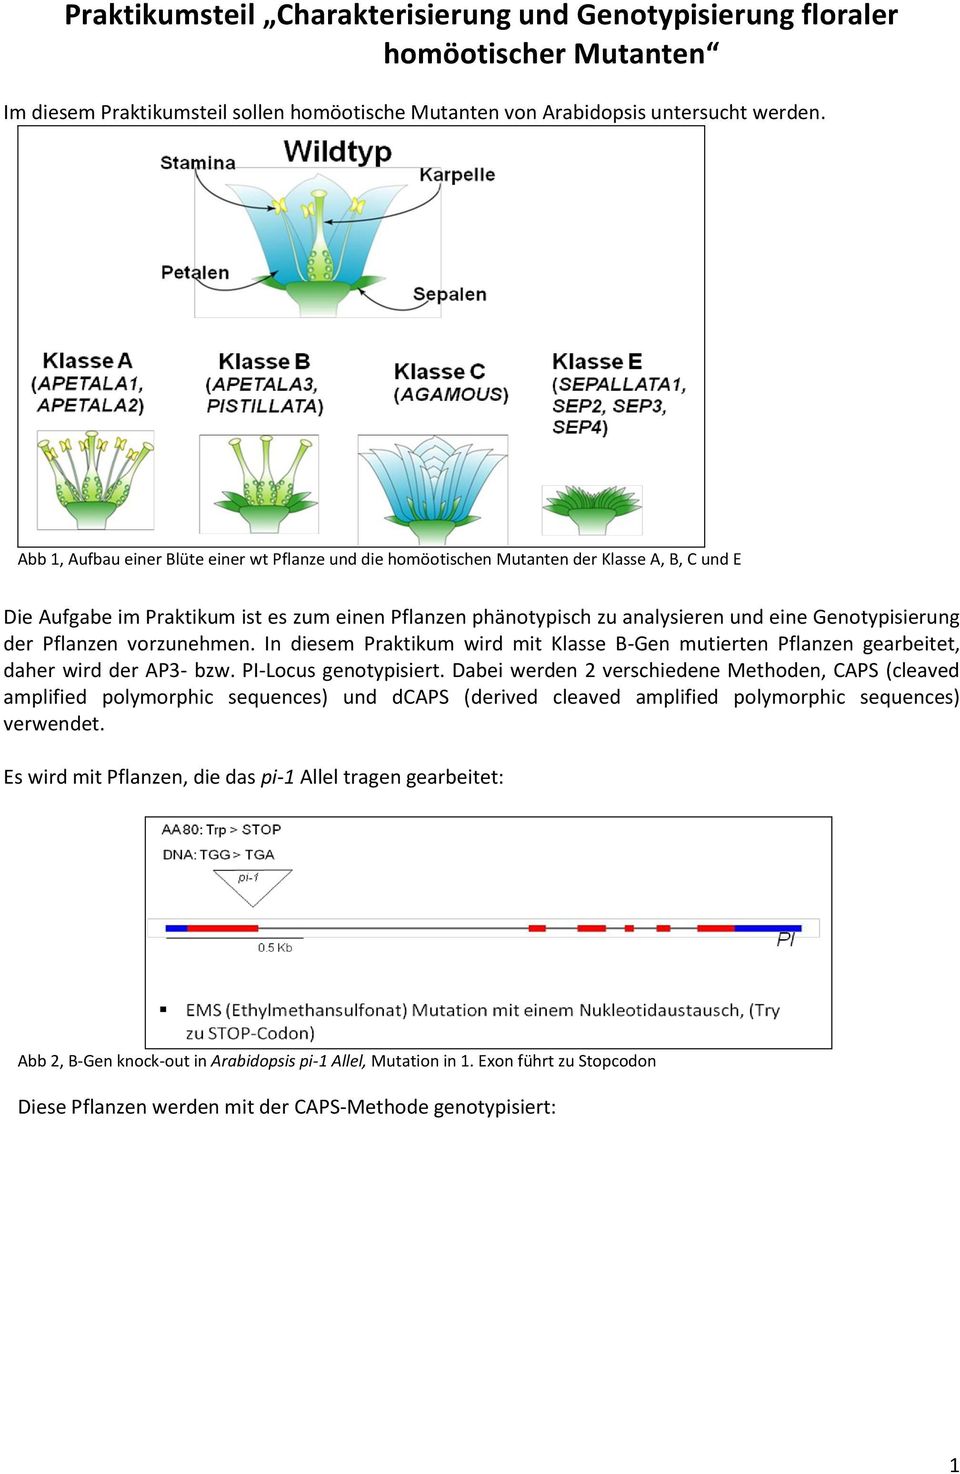 Genotypisierung der Pflanzen vorzunehmen. In diesem Praktikum wird mit Klasse B-Gen mutierten Pflanzen gearbeitet, daher wird der AP3- bzw. PI-Locus genotypisiert.